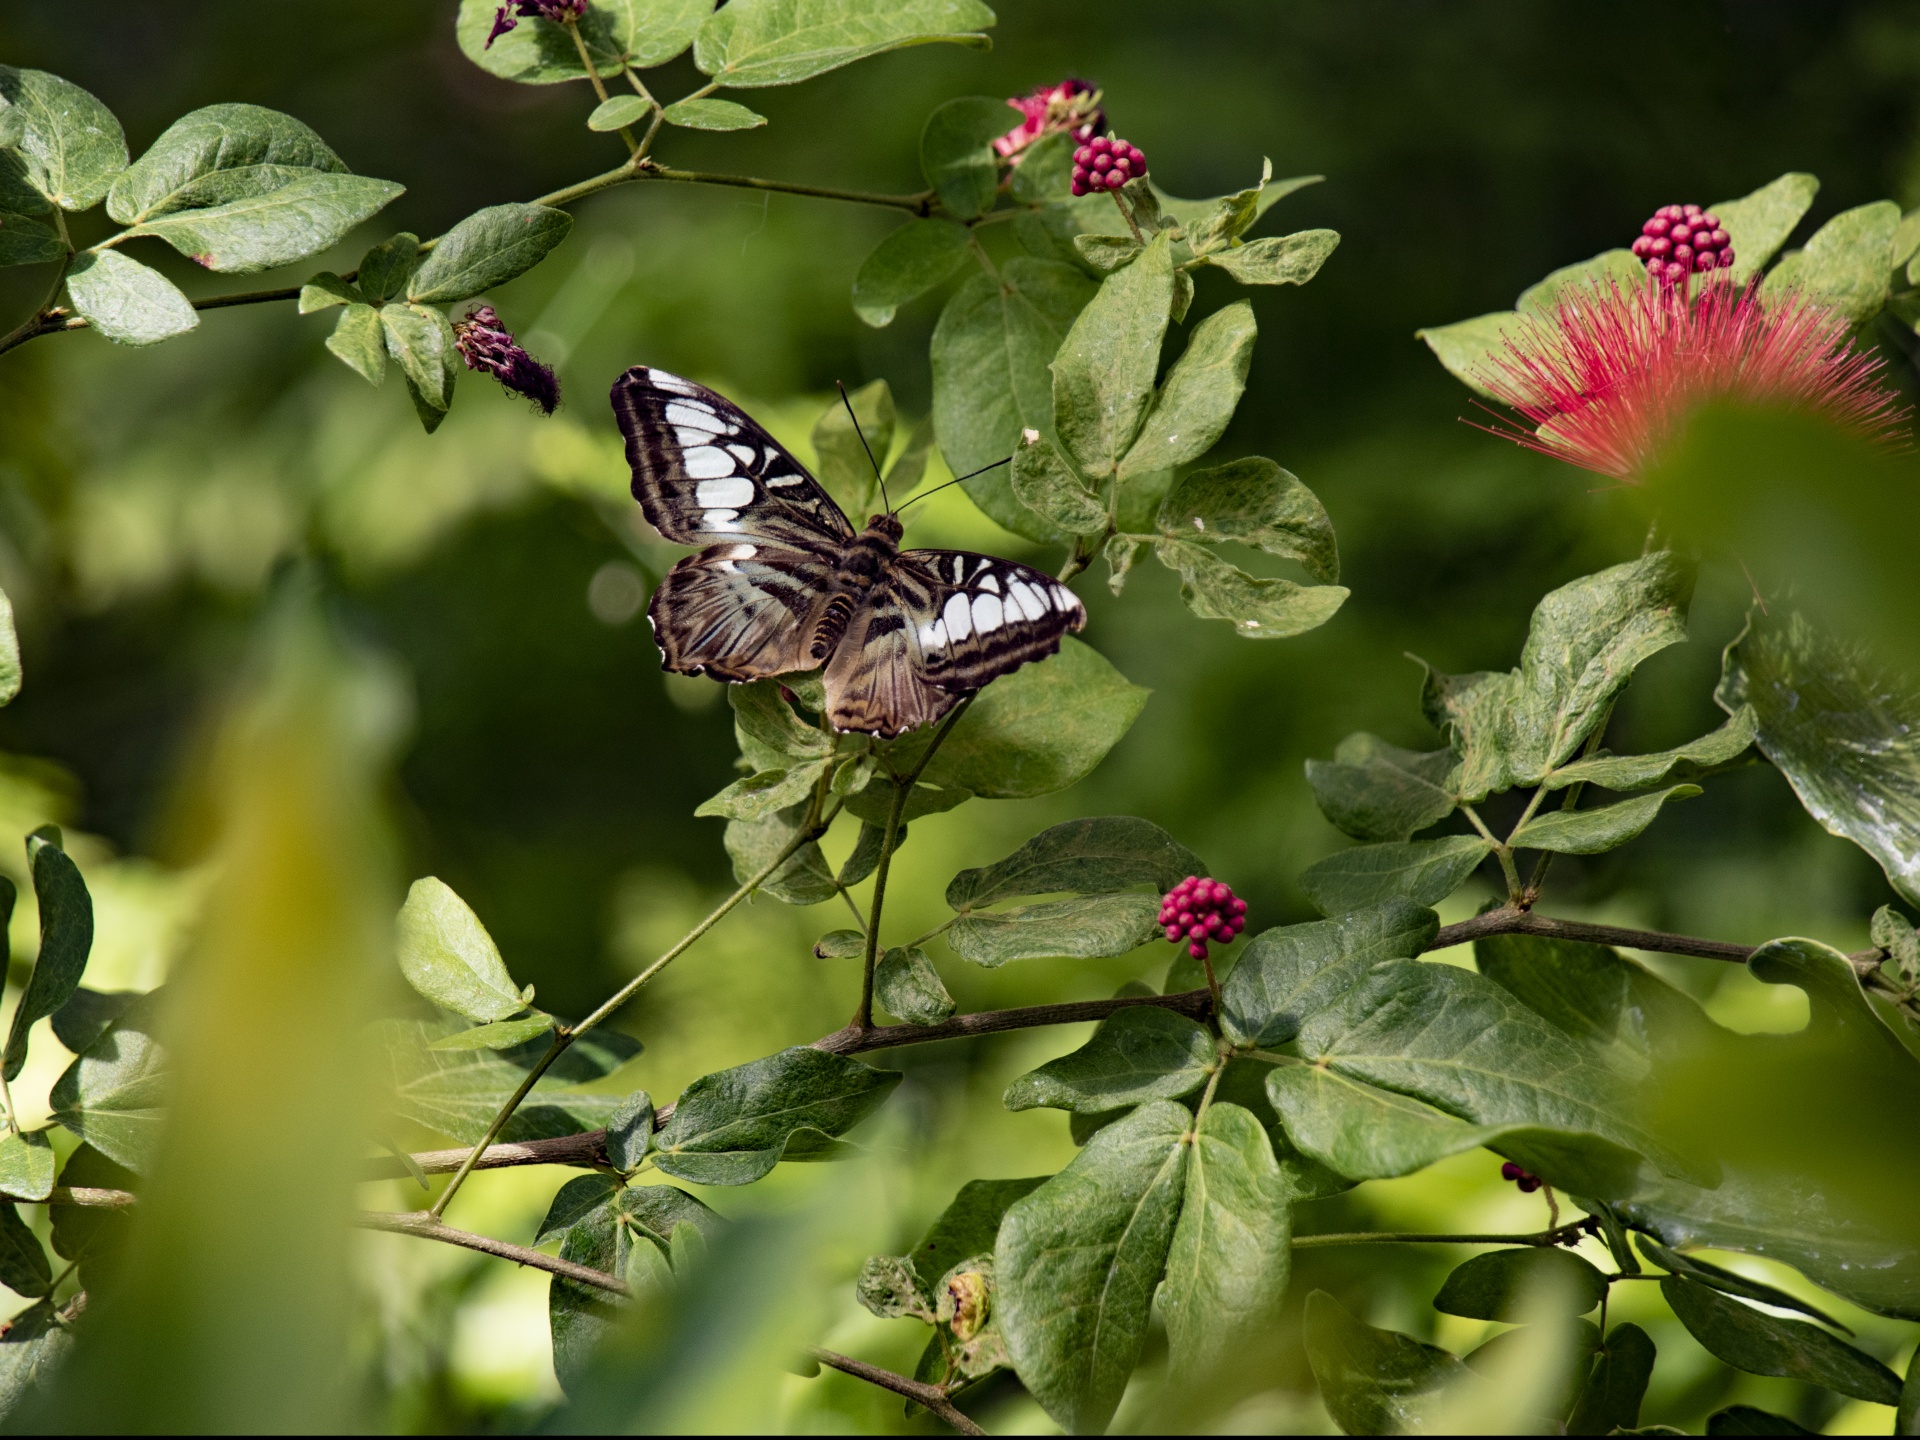 Hackberry Emperor Butterfly